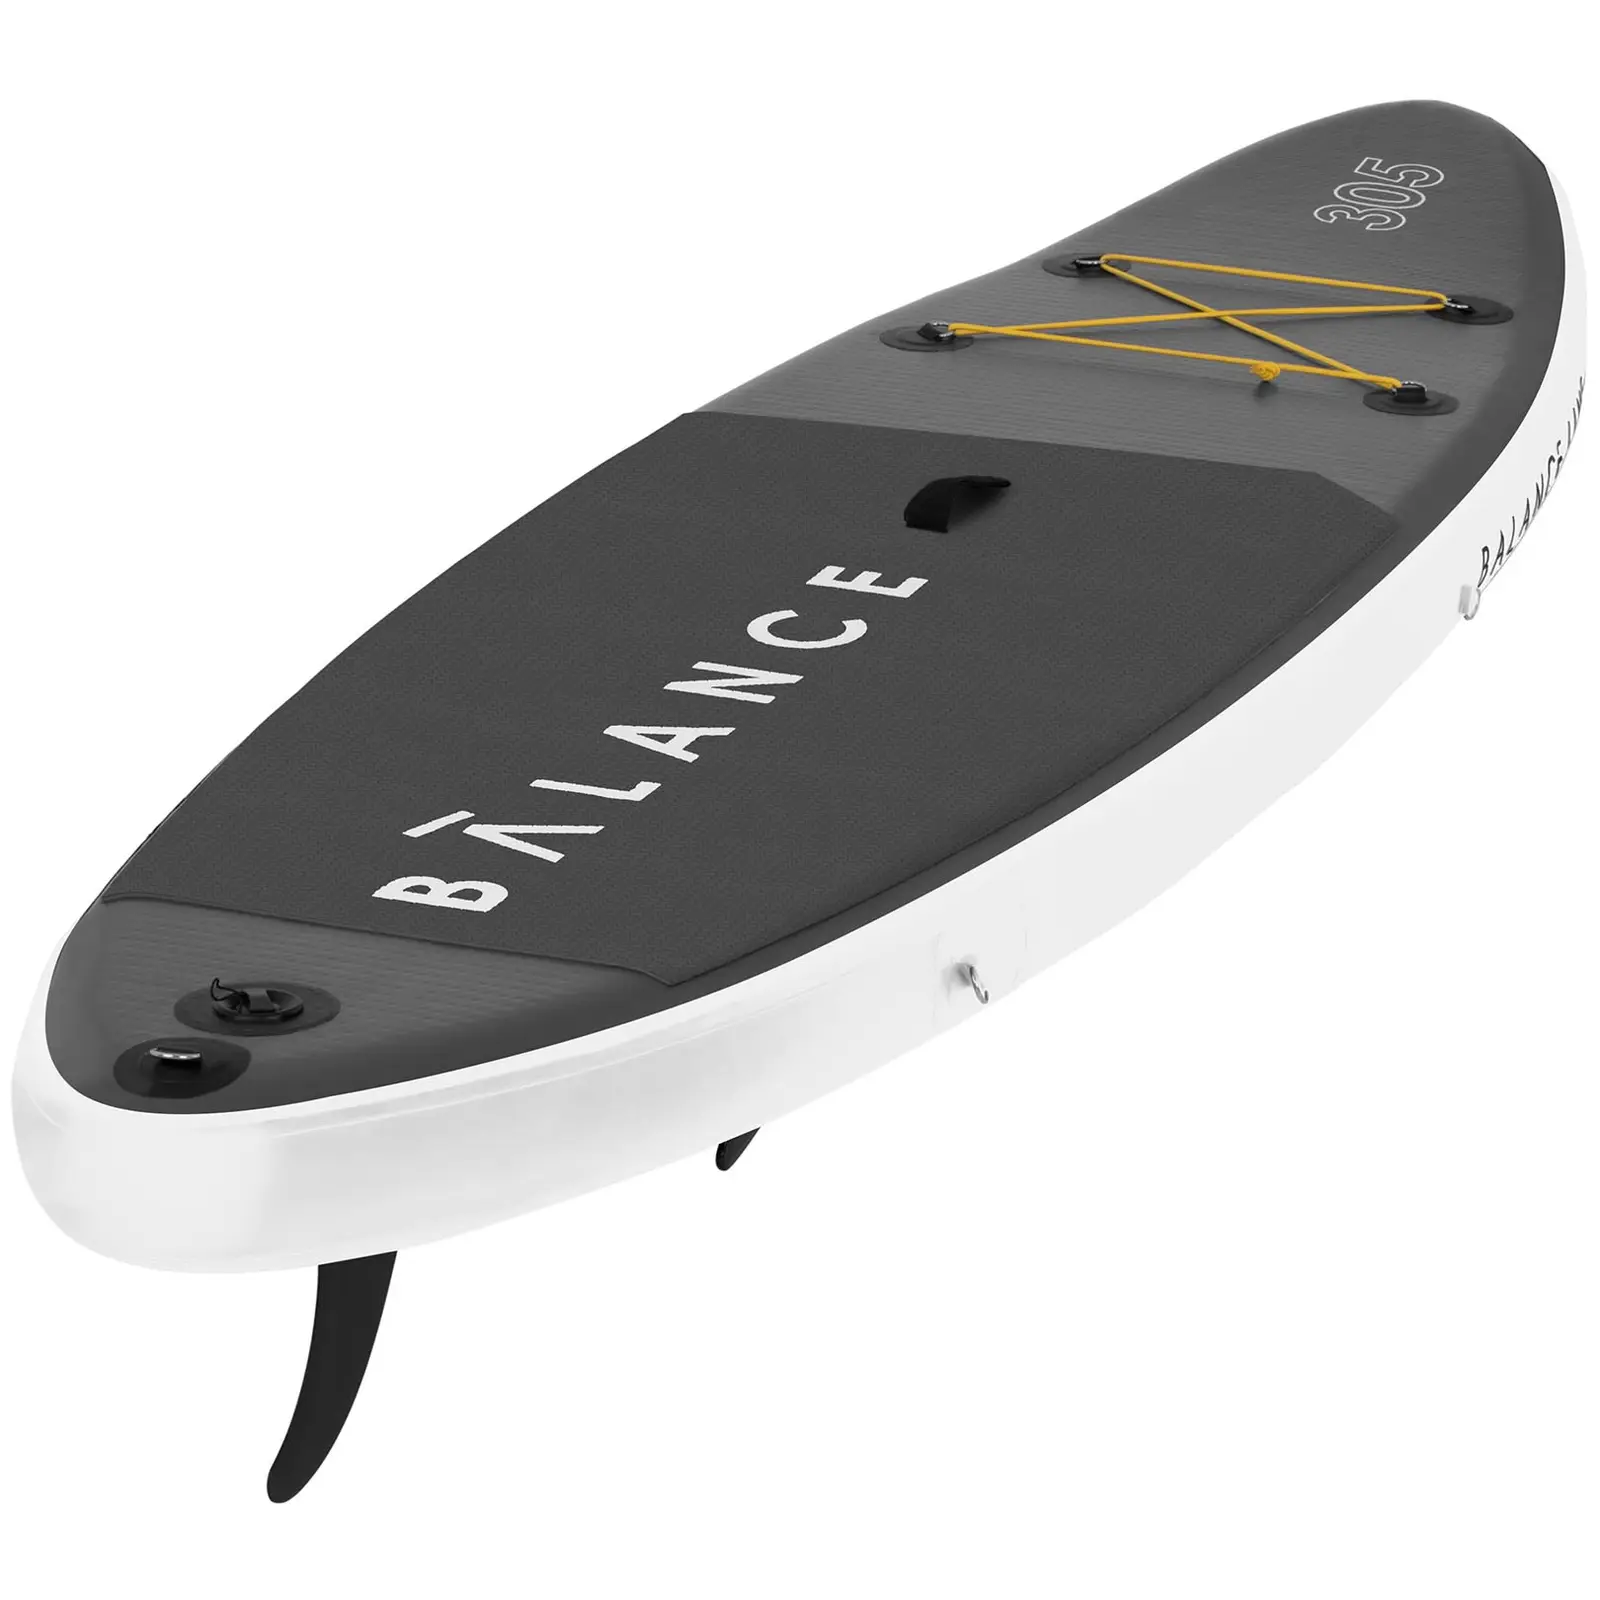 Nafukovací stand up paddleboard - 135 kg - 305 x 79 x 15 cm